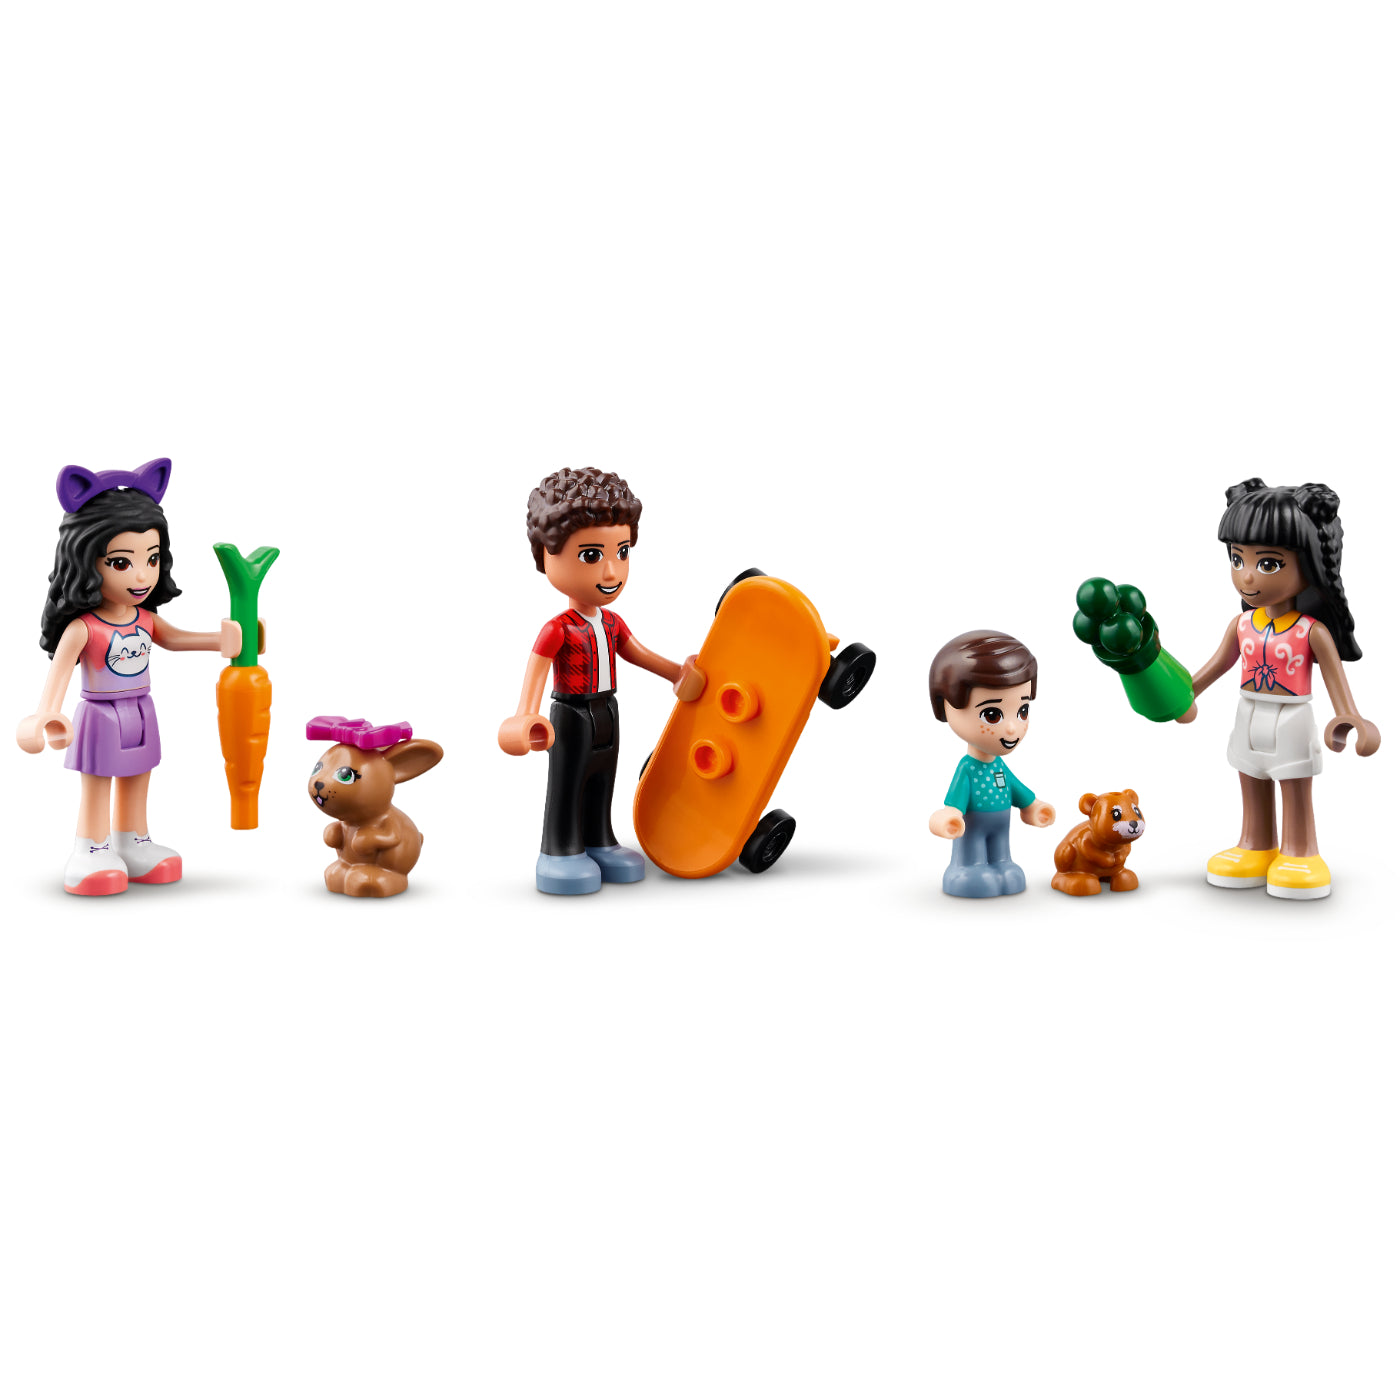 LEGO® Friends : Centro de Día para Mascotas (41718)